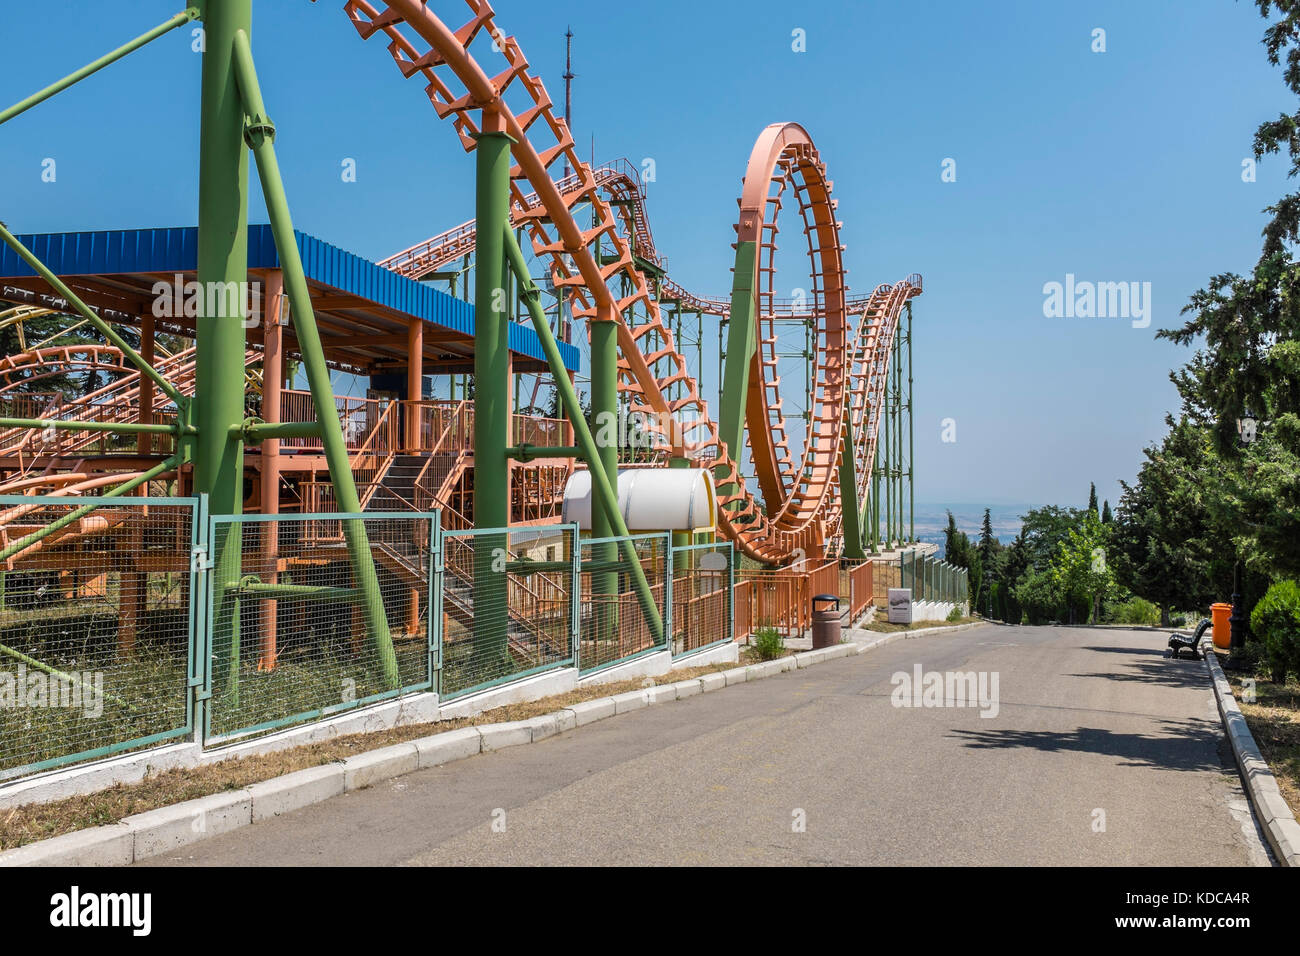 Mtatsminda amusement park, Tbilissi, Géorgie, l'Europe de l'Est. Banque D'Images